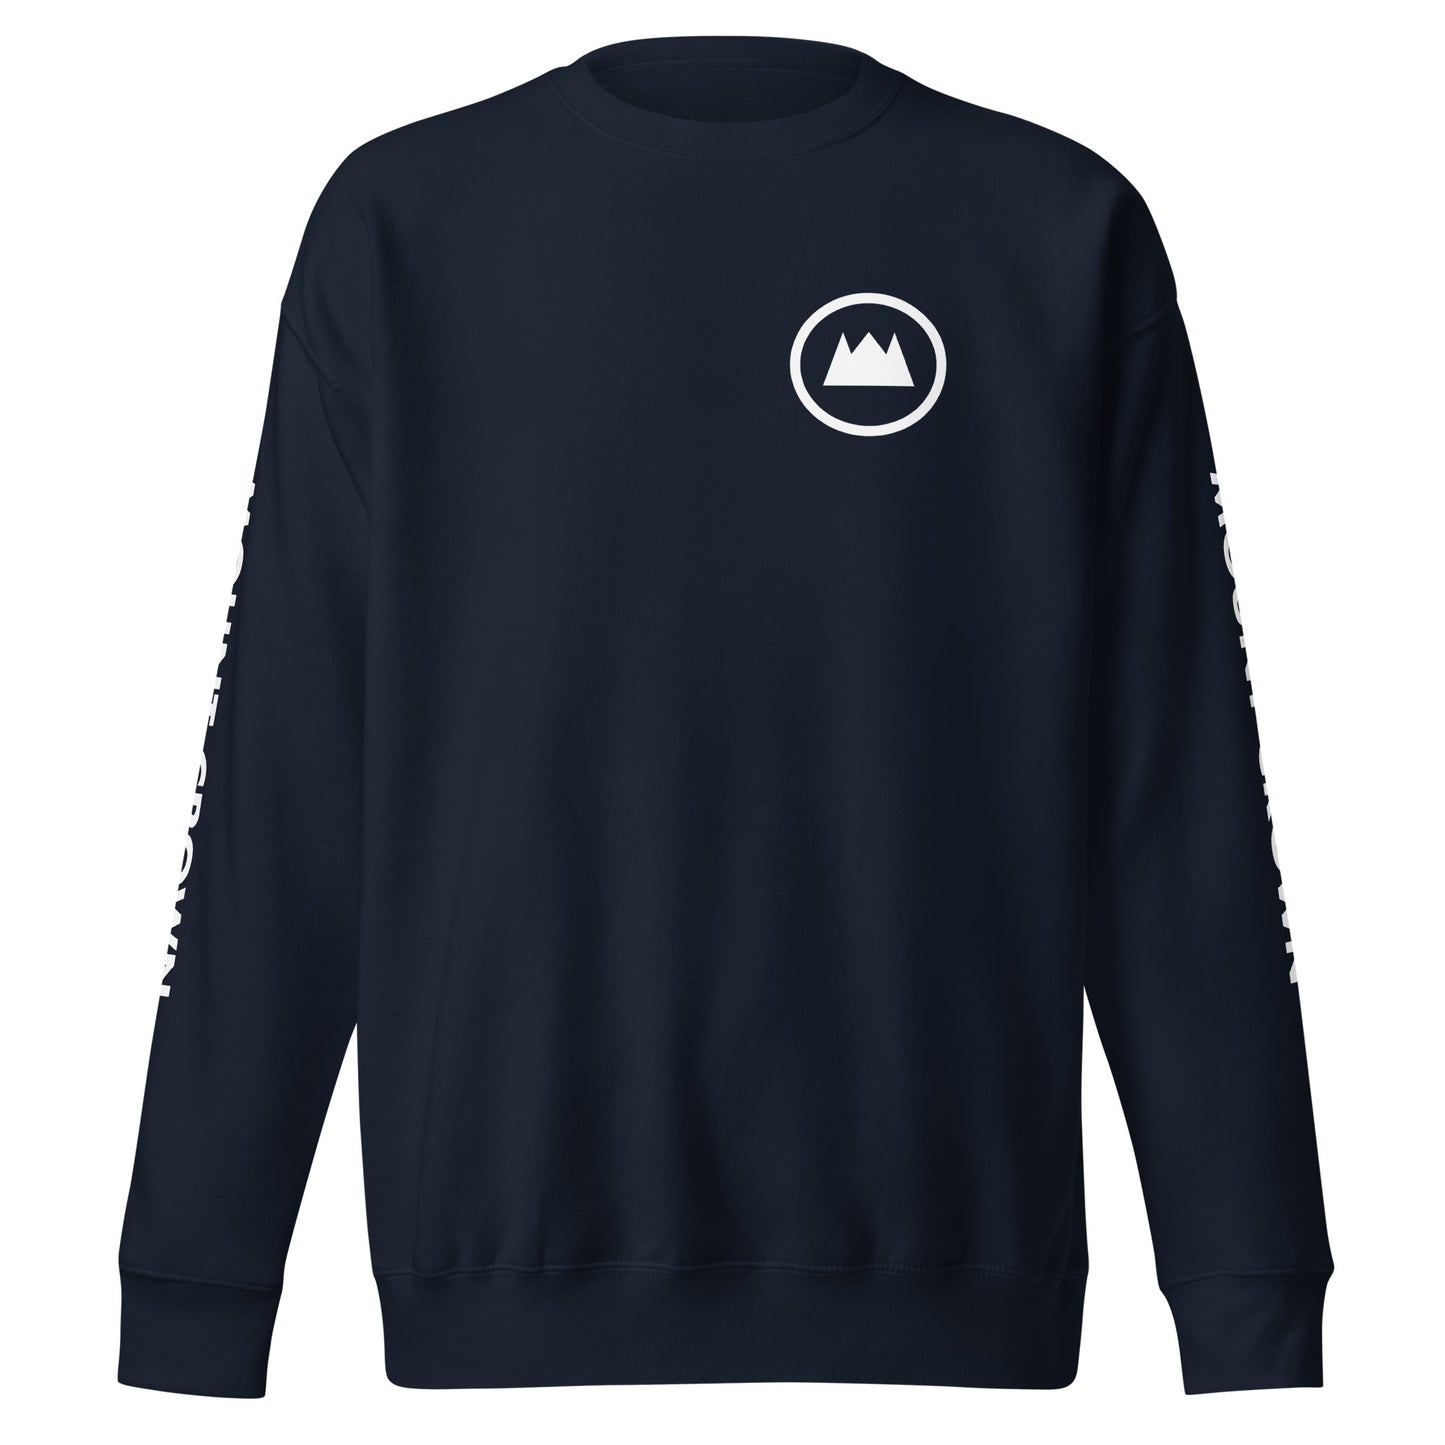 MOUNT CROWN Little Crown (W) Unisex Premium Sweatshirt